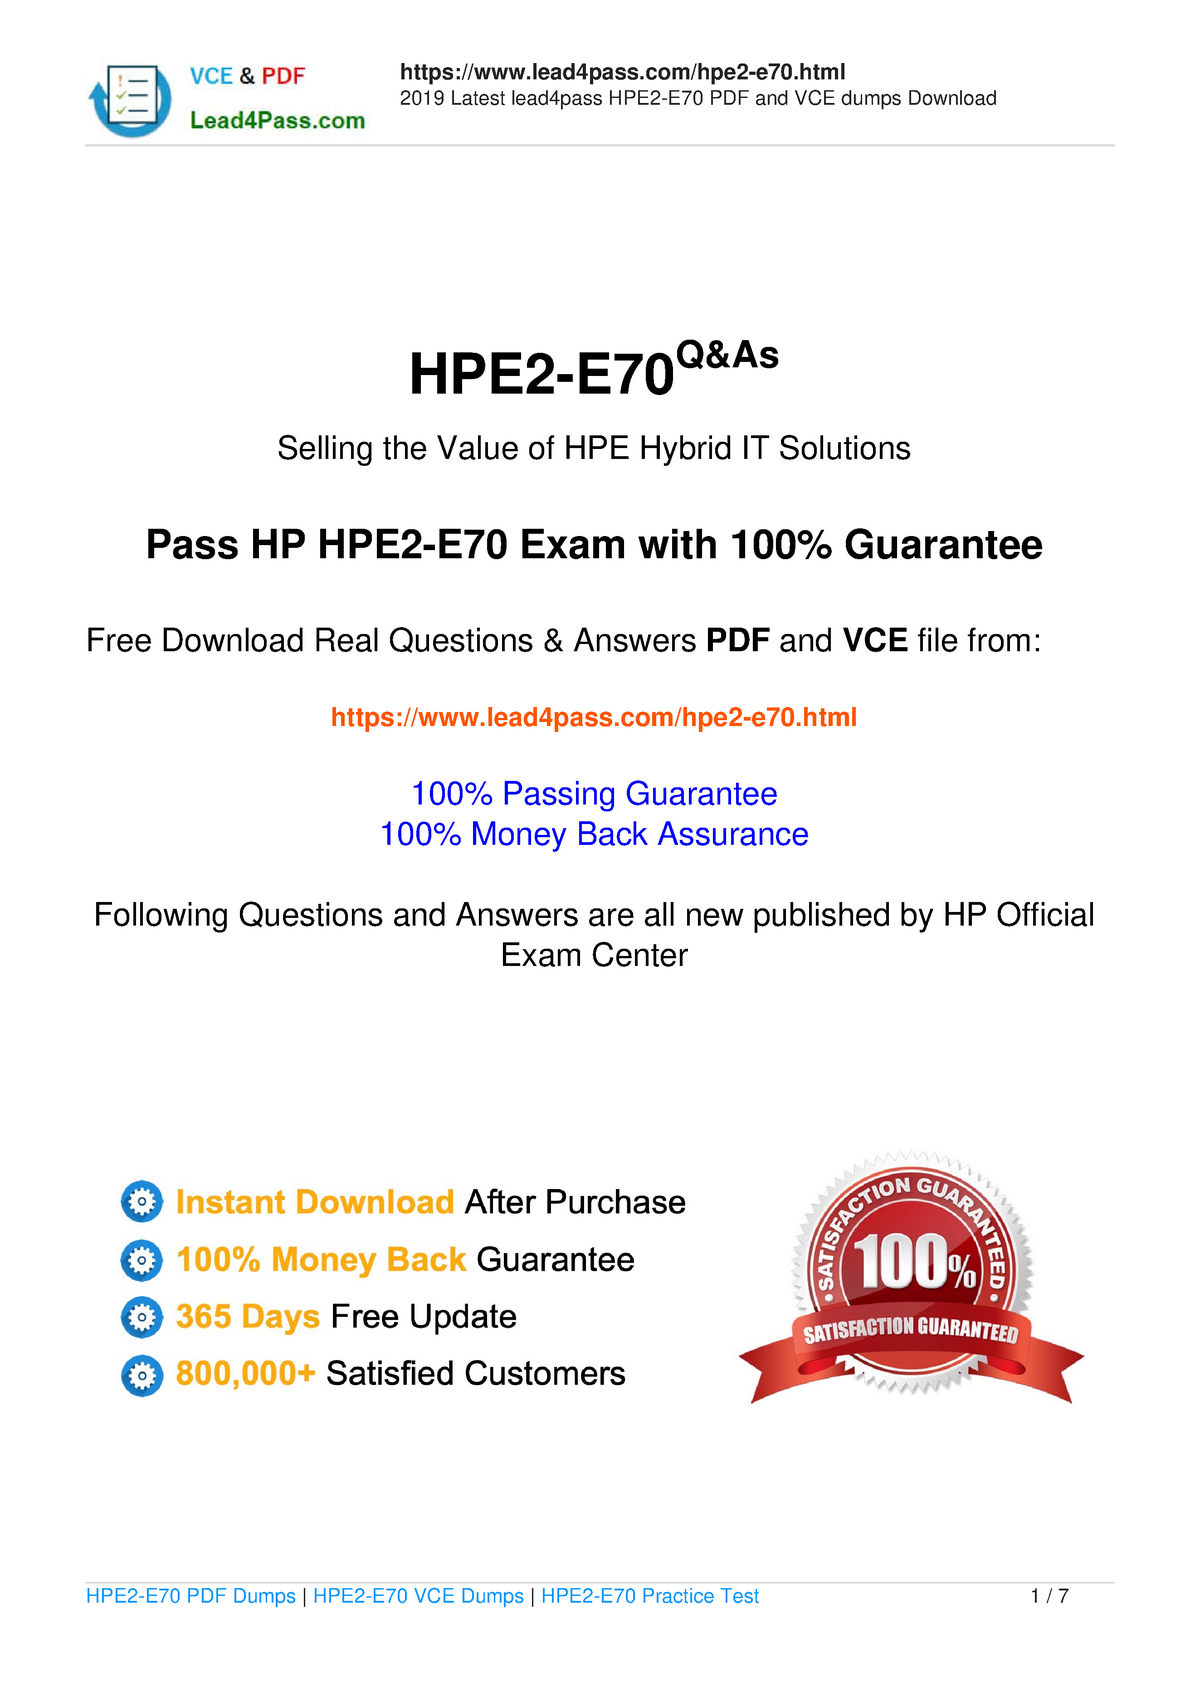 HPE2-N70 Echte Fragen